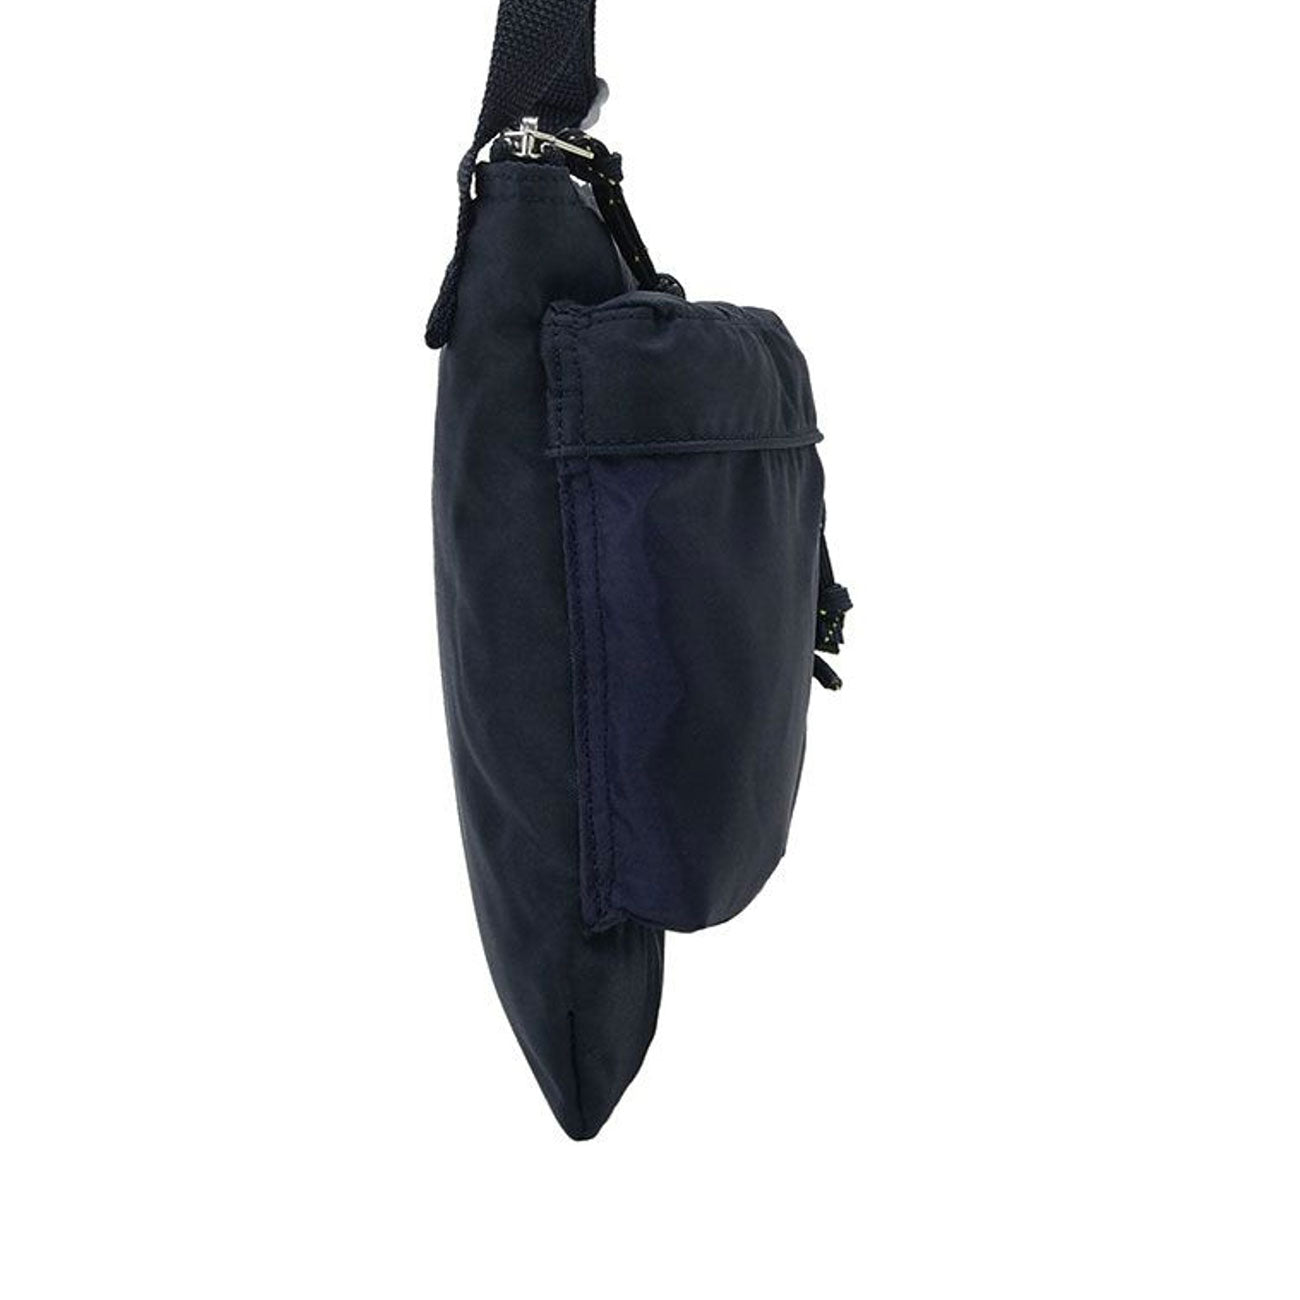 porter-yoshida & co. force shoulder bag (navy)